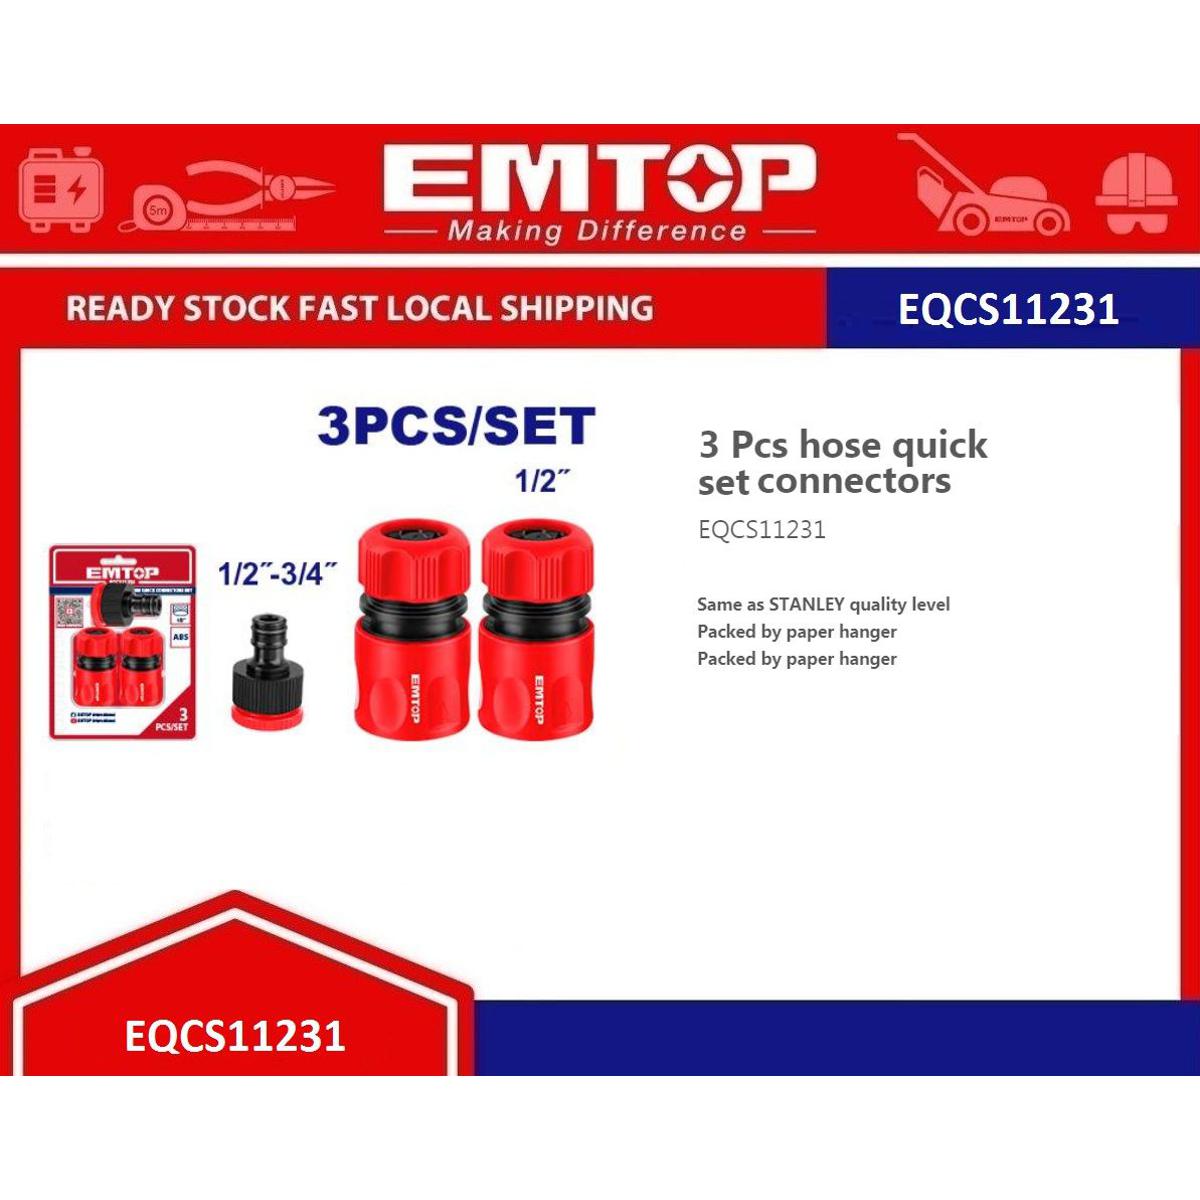 Emtop - 3 Pcs Hose Quick Connectors Set- Model - EQCS11231